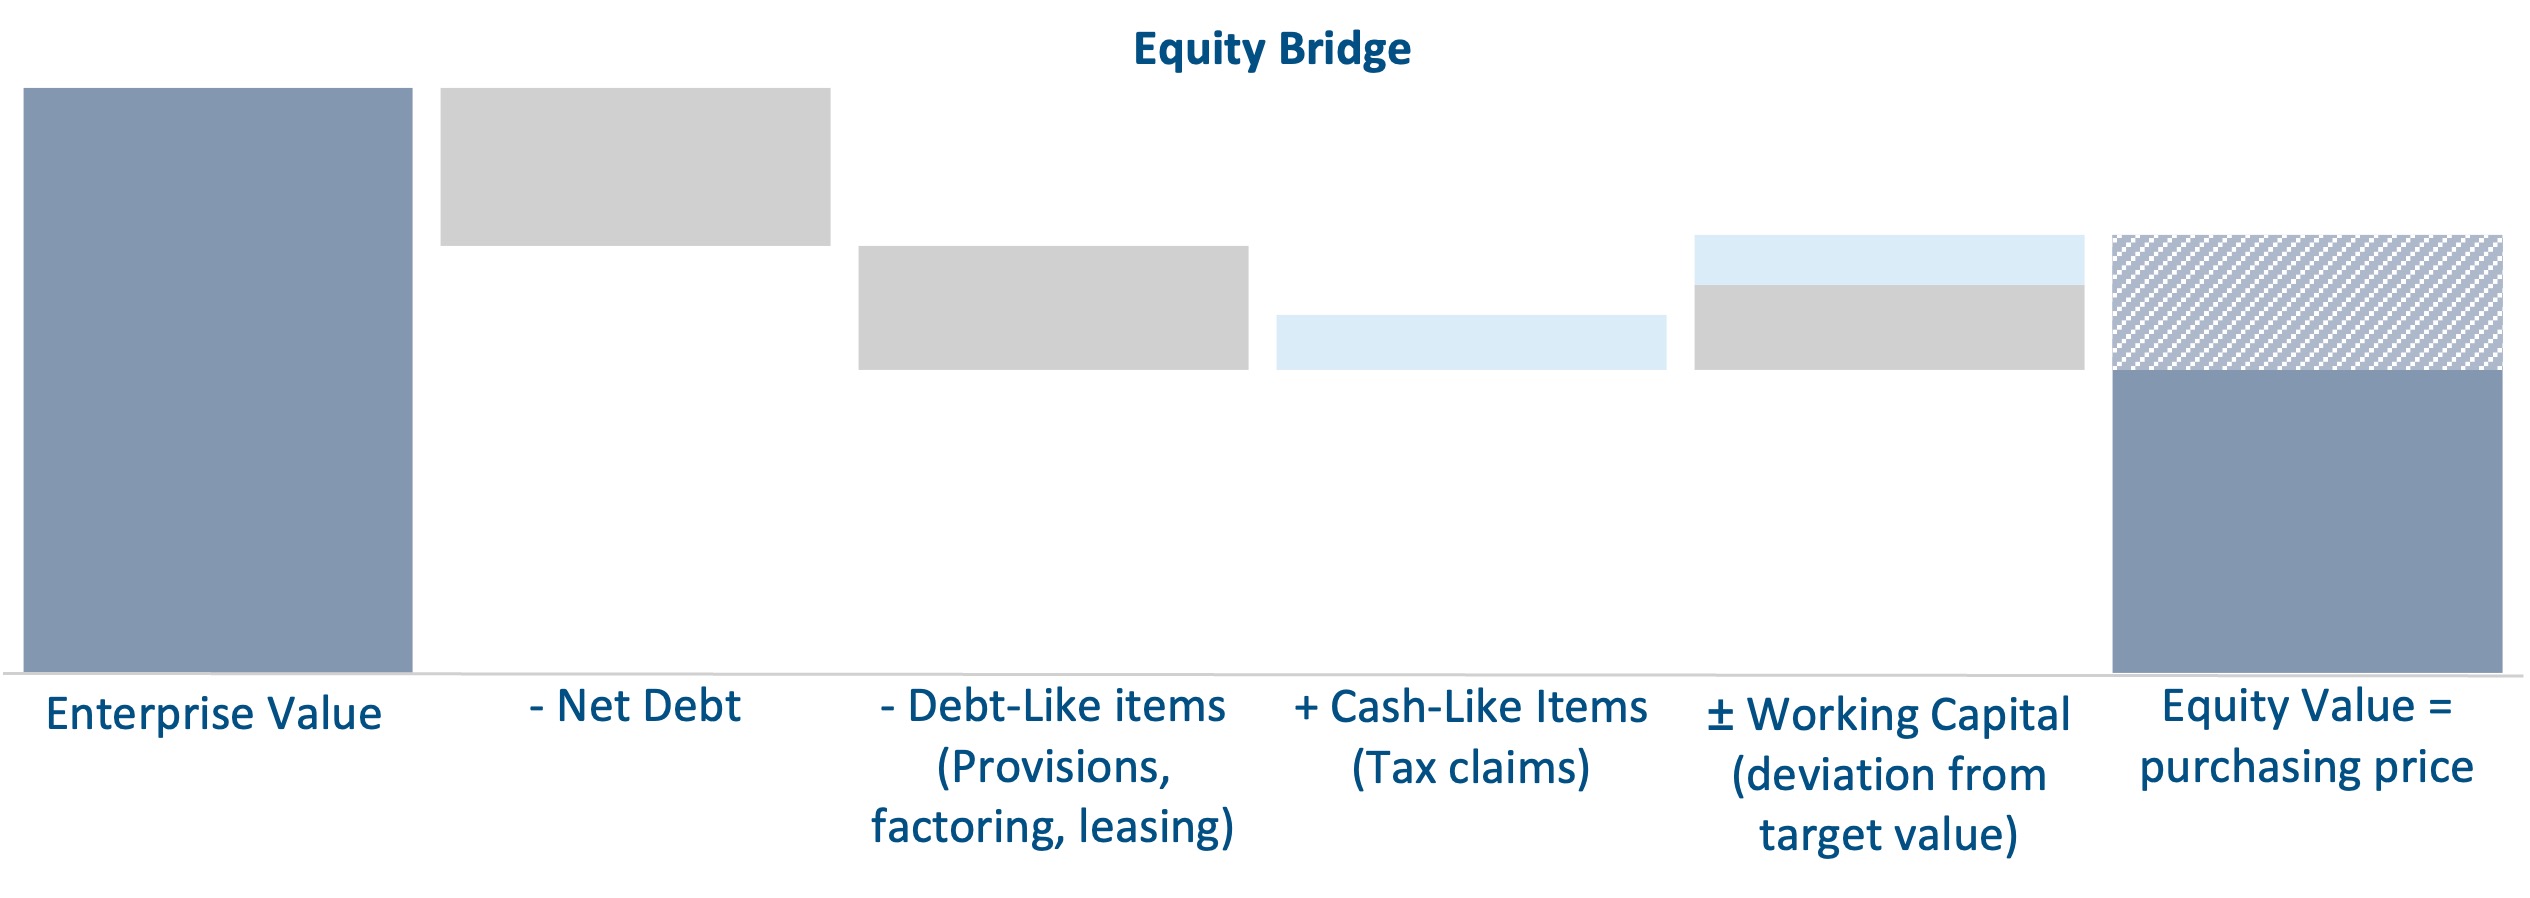 Equity Bridge